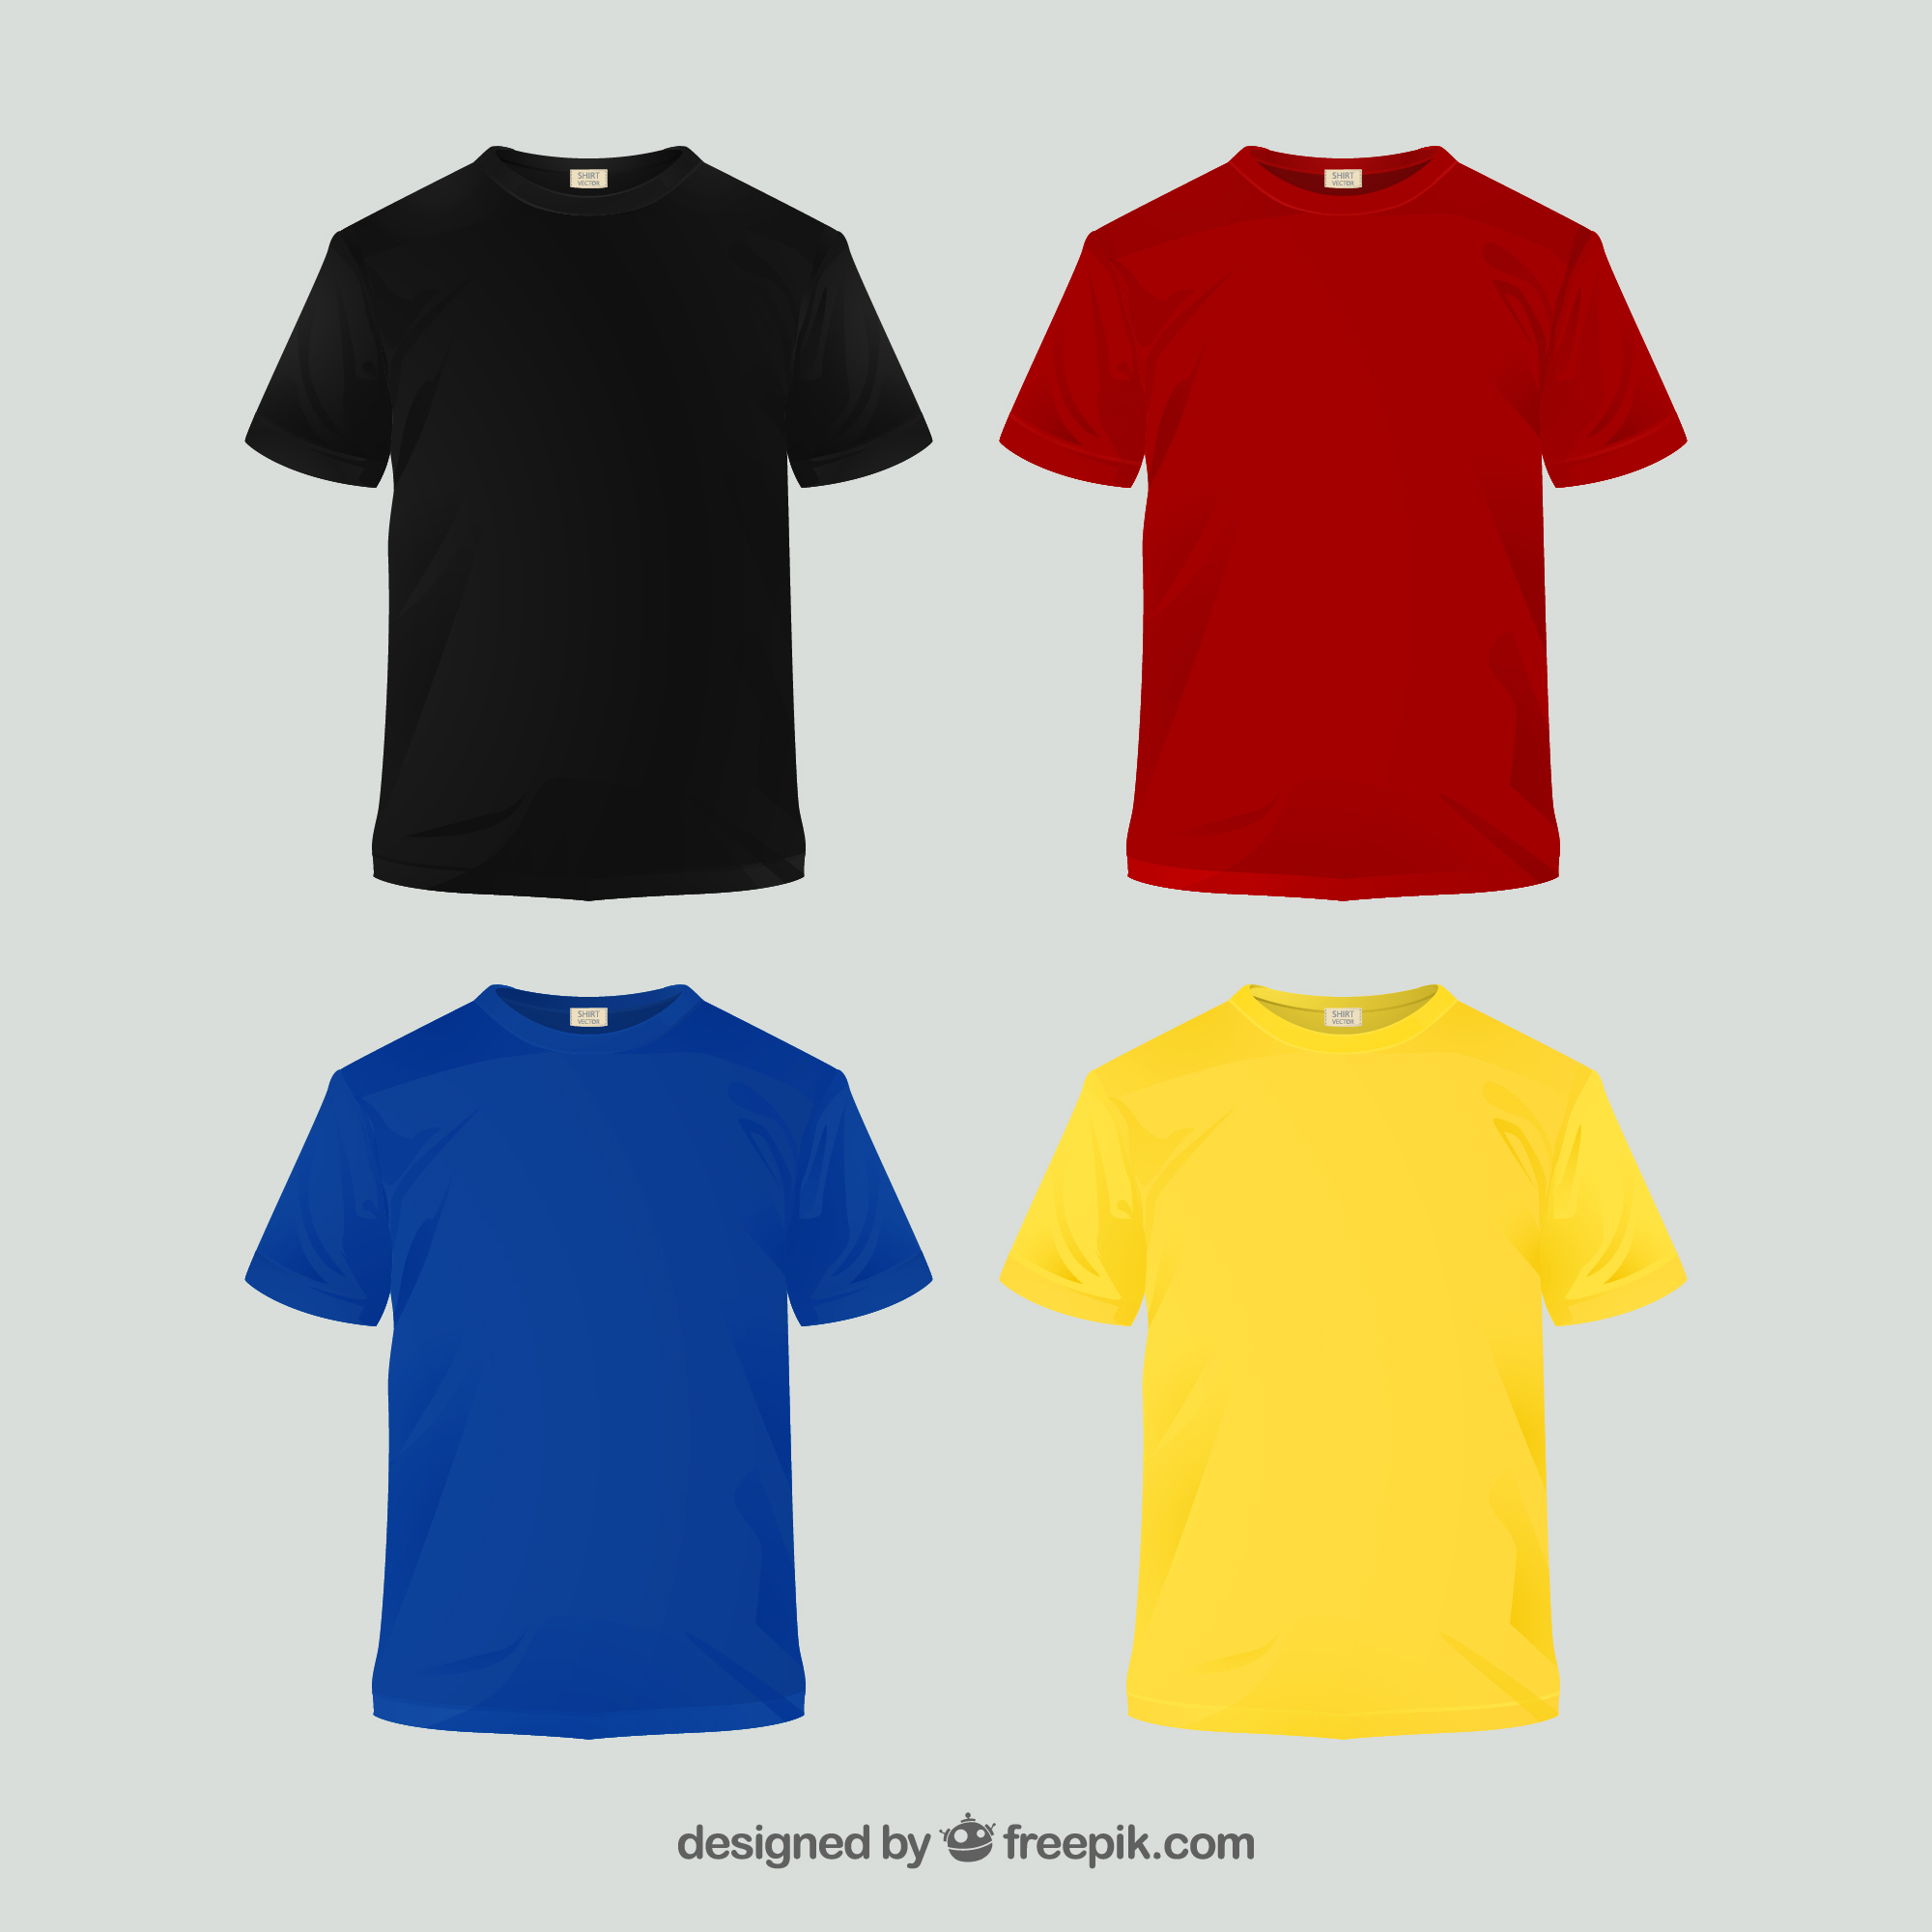 Футболка collection. Футболки разных цветов. Коллекция футболок. Футболка 2d. Коллекция футболок разных цветов.